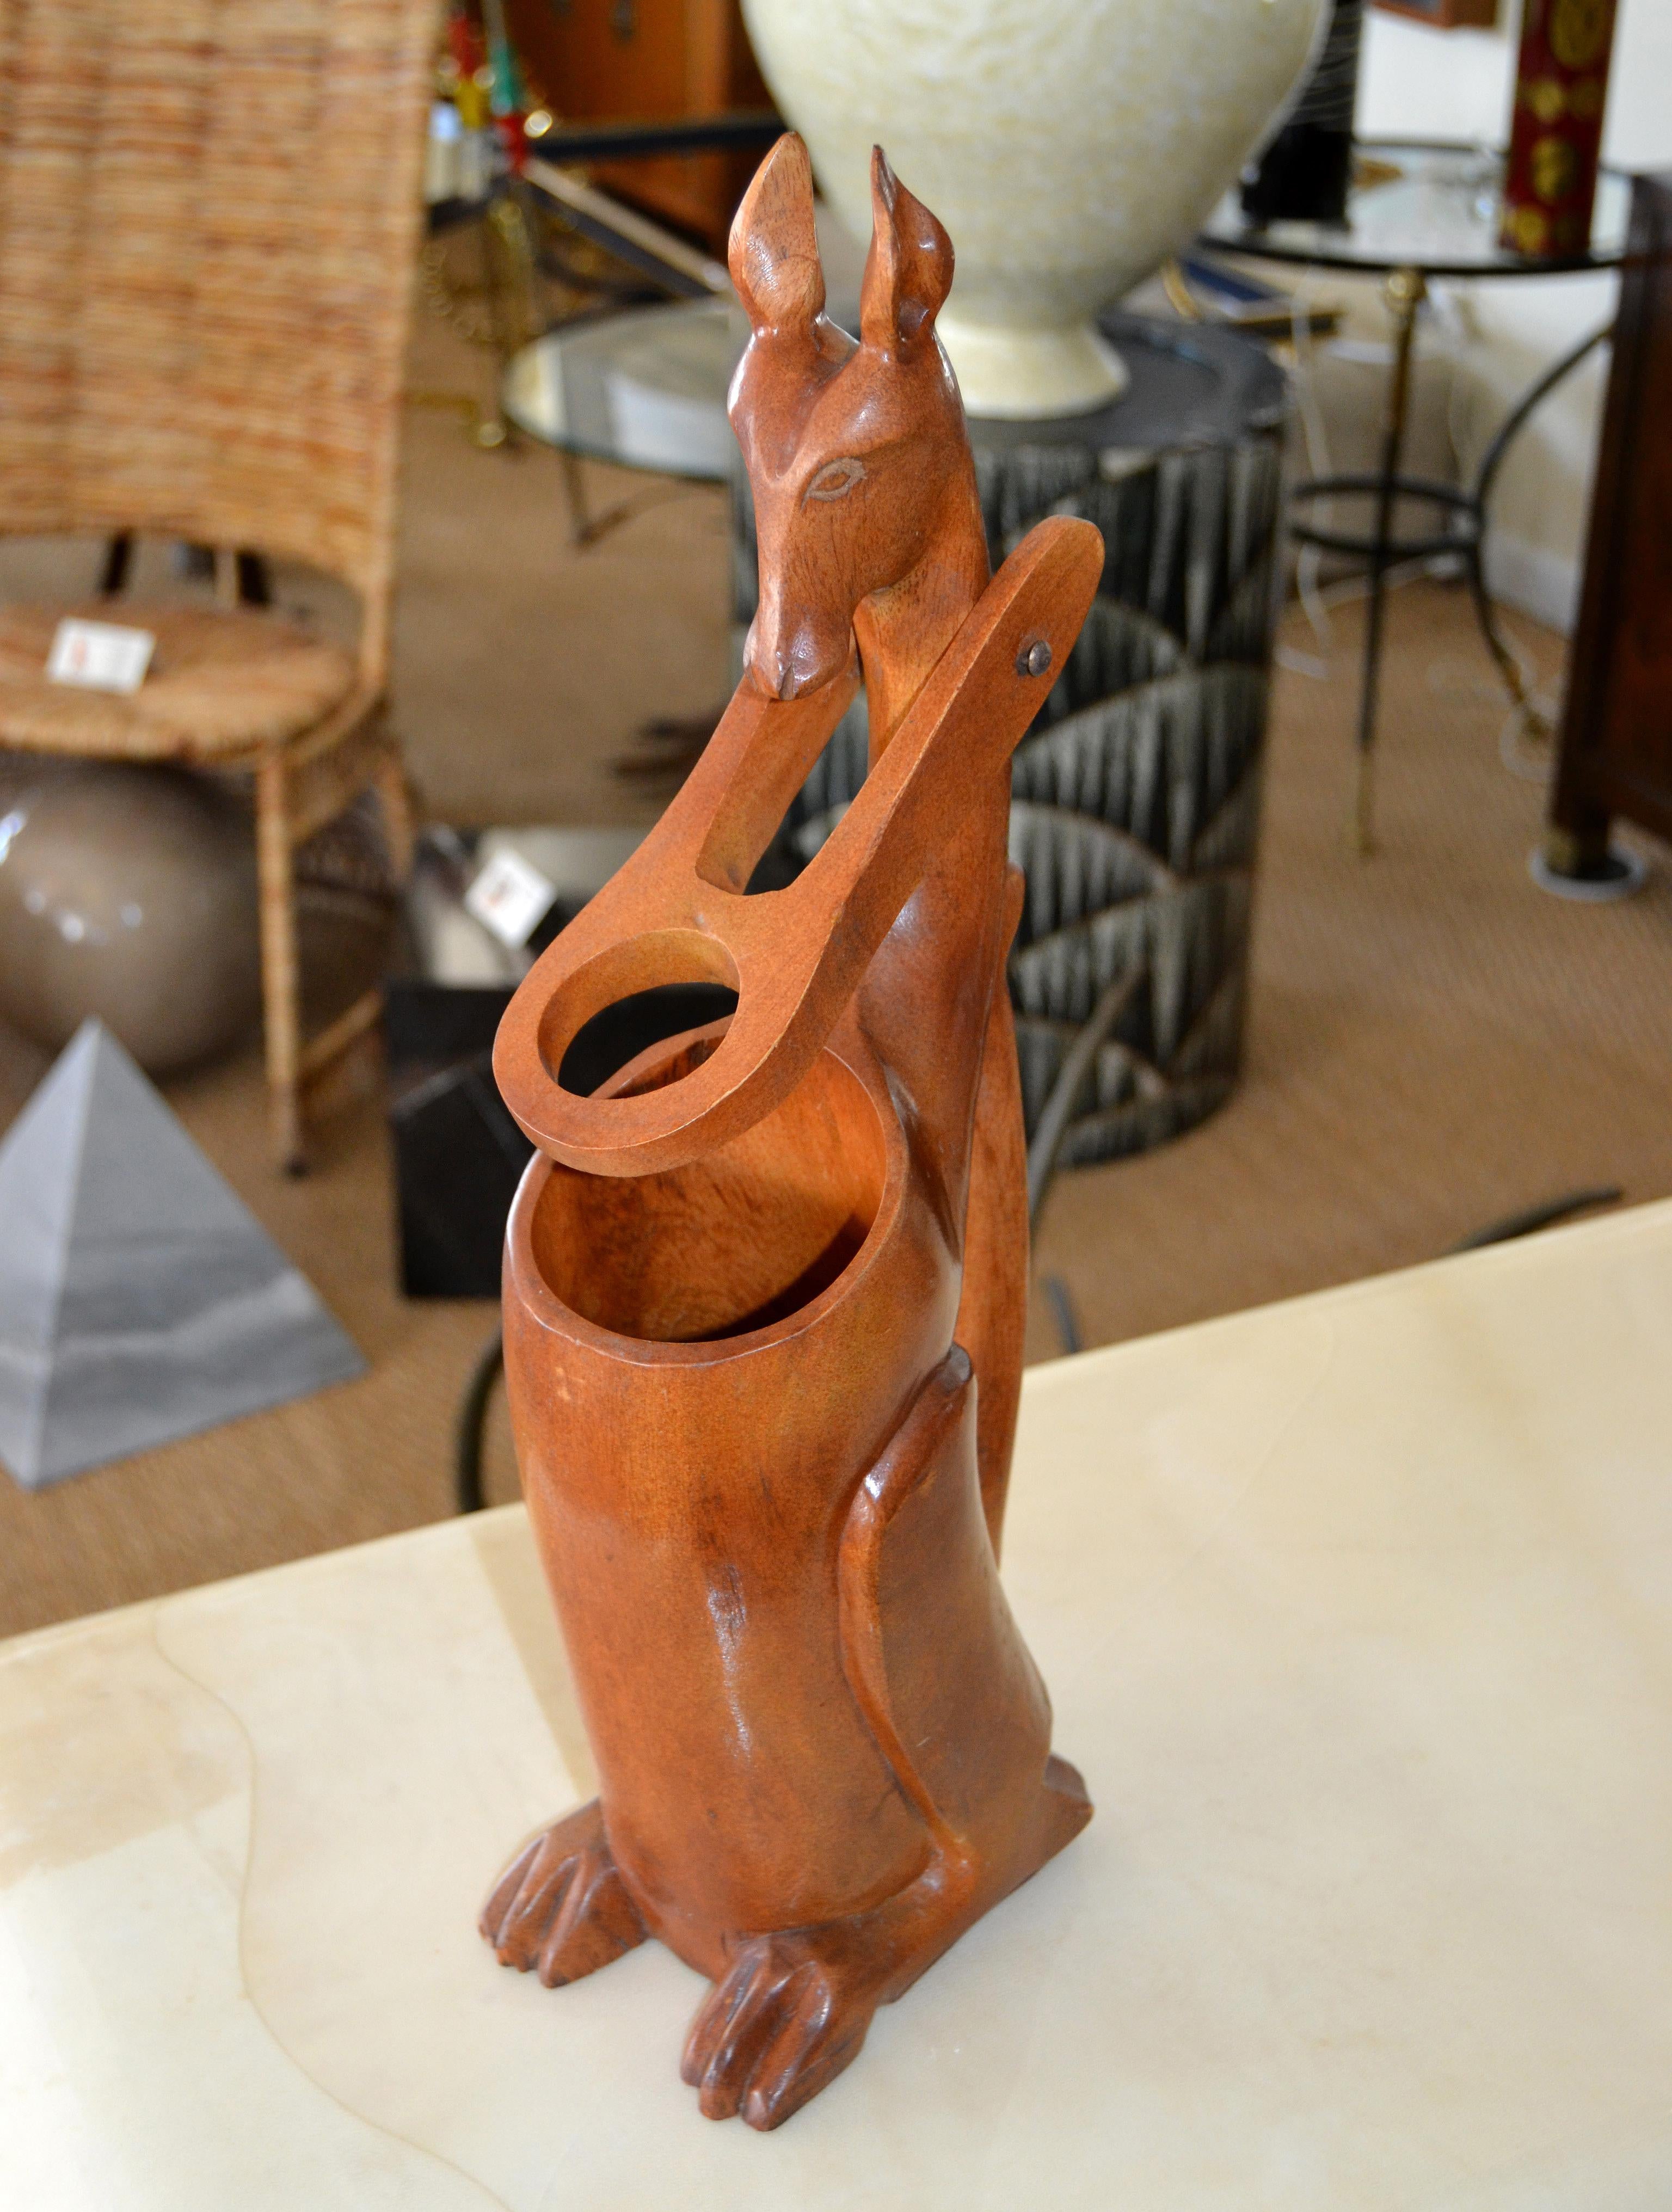 Wir bieten einen handgeschnitzten Känguru-Weinflaschenhalter, Ausgießer oder Spender aus Holz aus den 1950er Jahren an.
Hergestellt aus einem Stück Holz mit schönen Details.
  